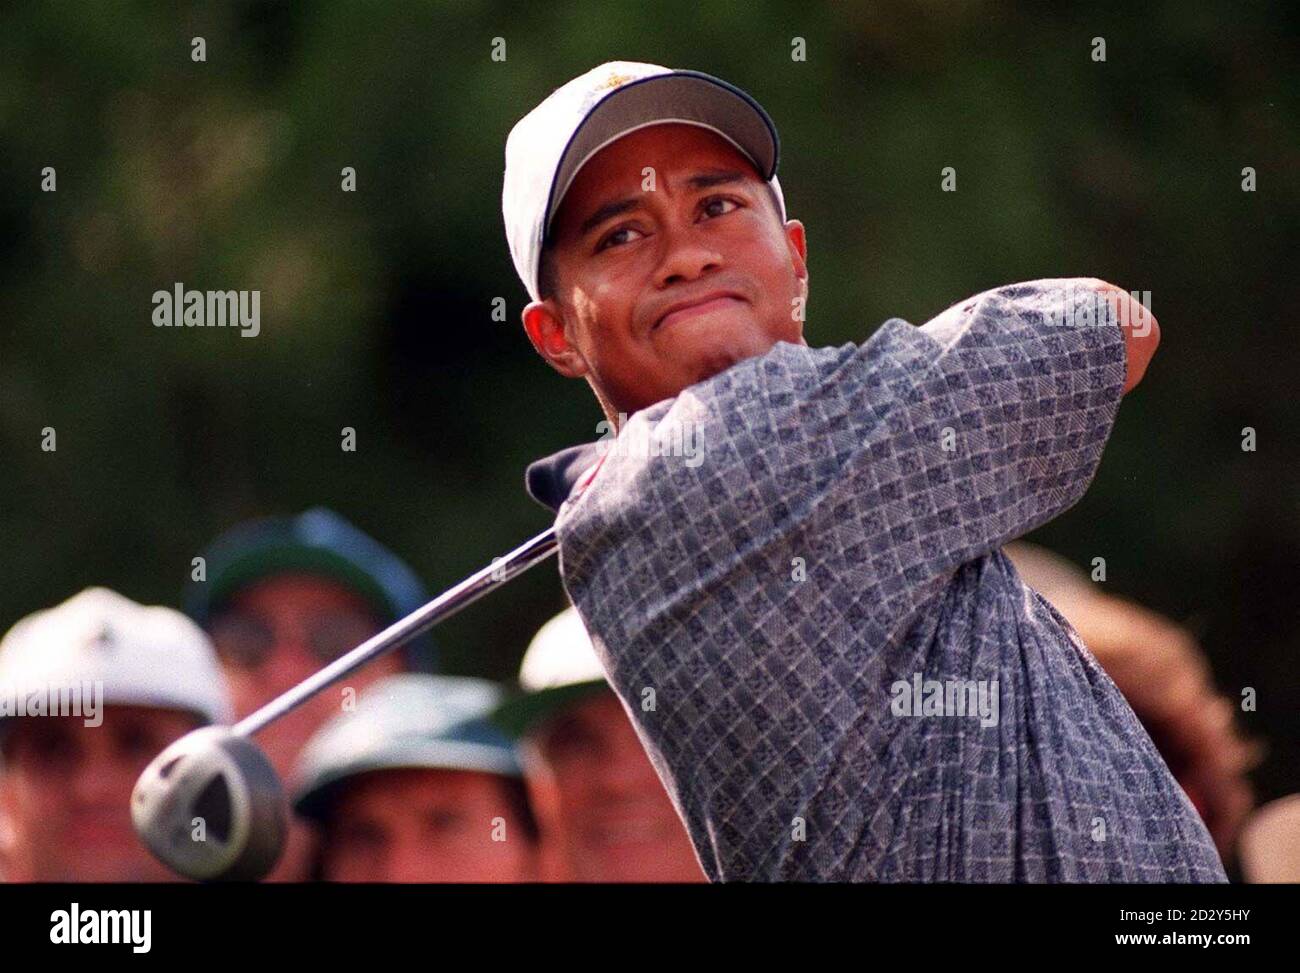 American Tiger Woods schlägt heute (Dienstag) das 8. Loch in Valderrama ab, um sich auf den Johnnie Walker Ryder Cup '97 vorzubereiten, der später in dieser Woche auf dem spanischen Platz gespielt werden soll. Foto von Rebecca Naden/PA Stockfoto